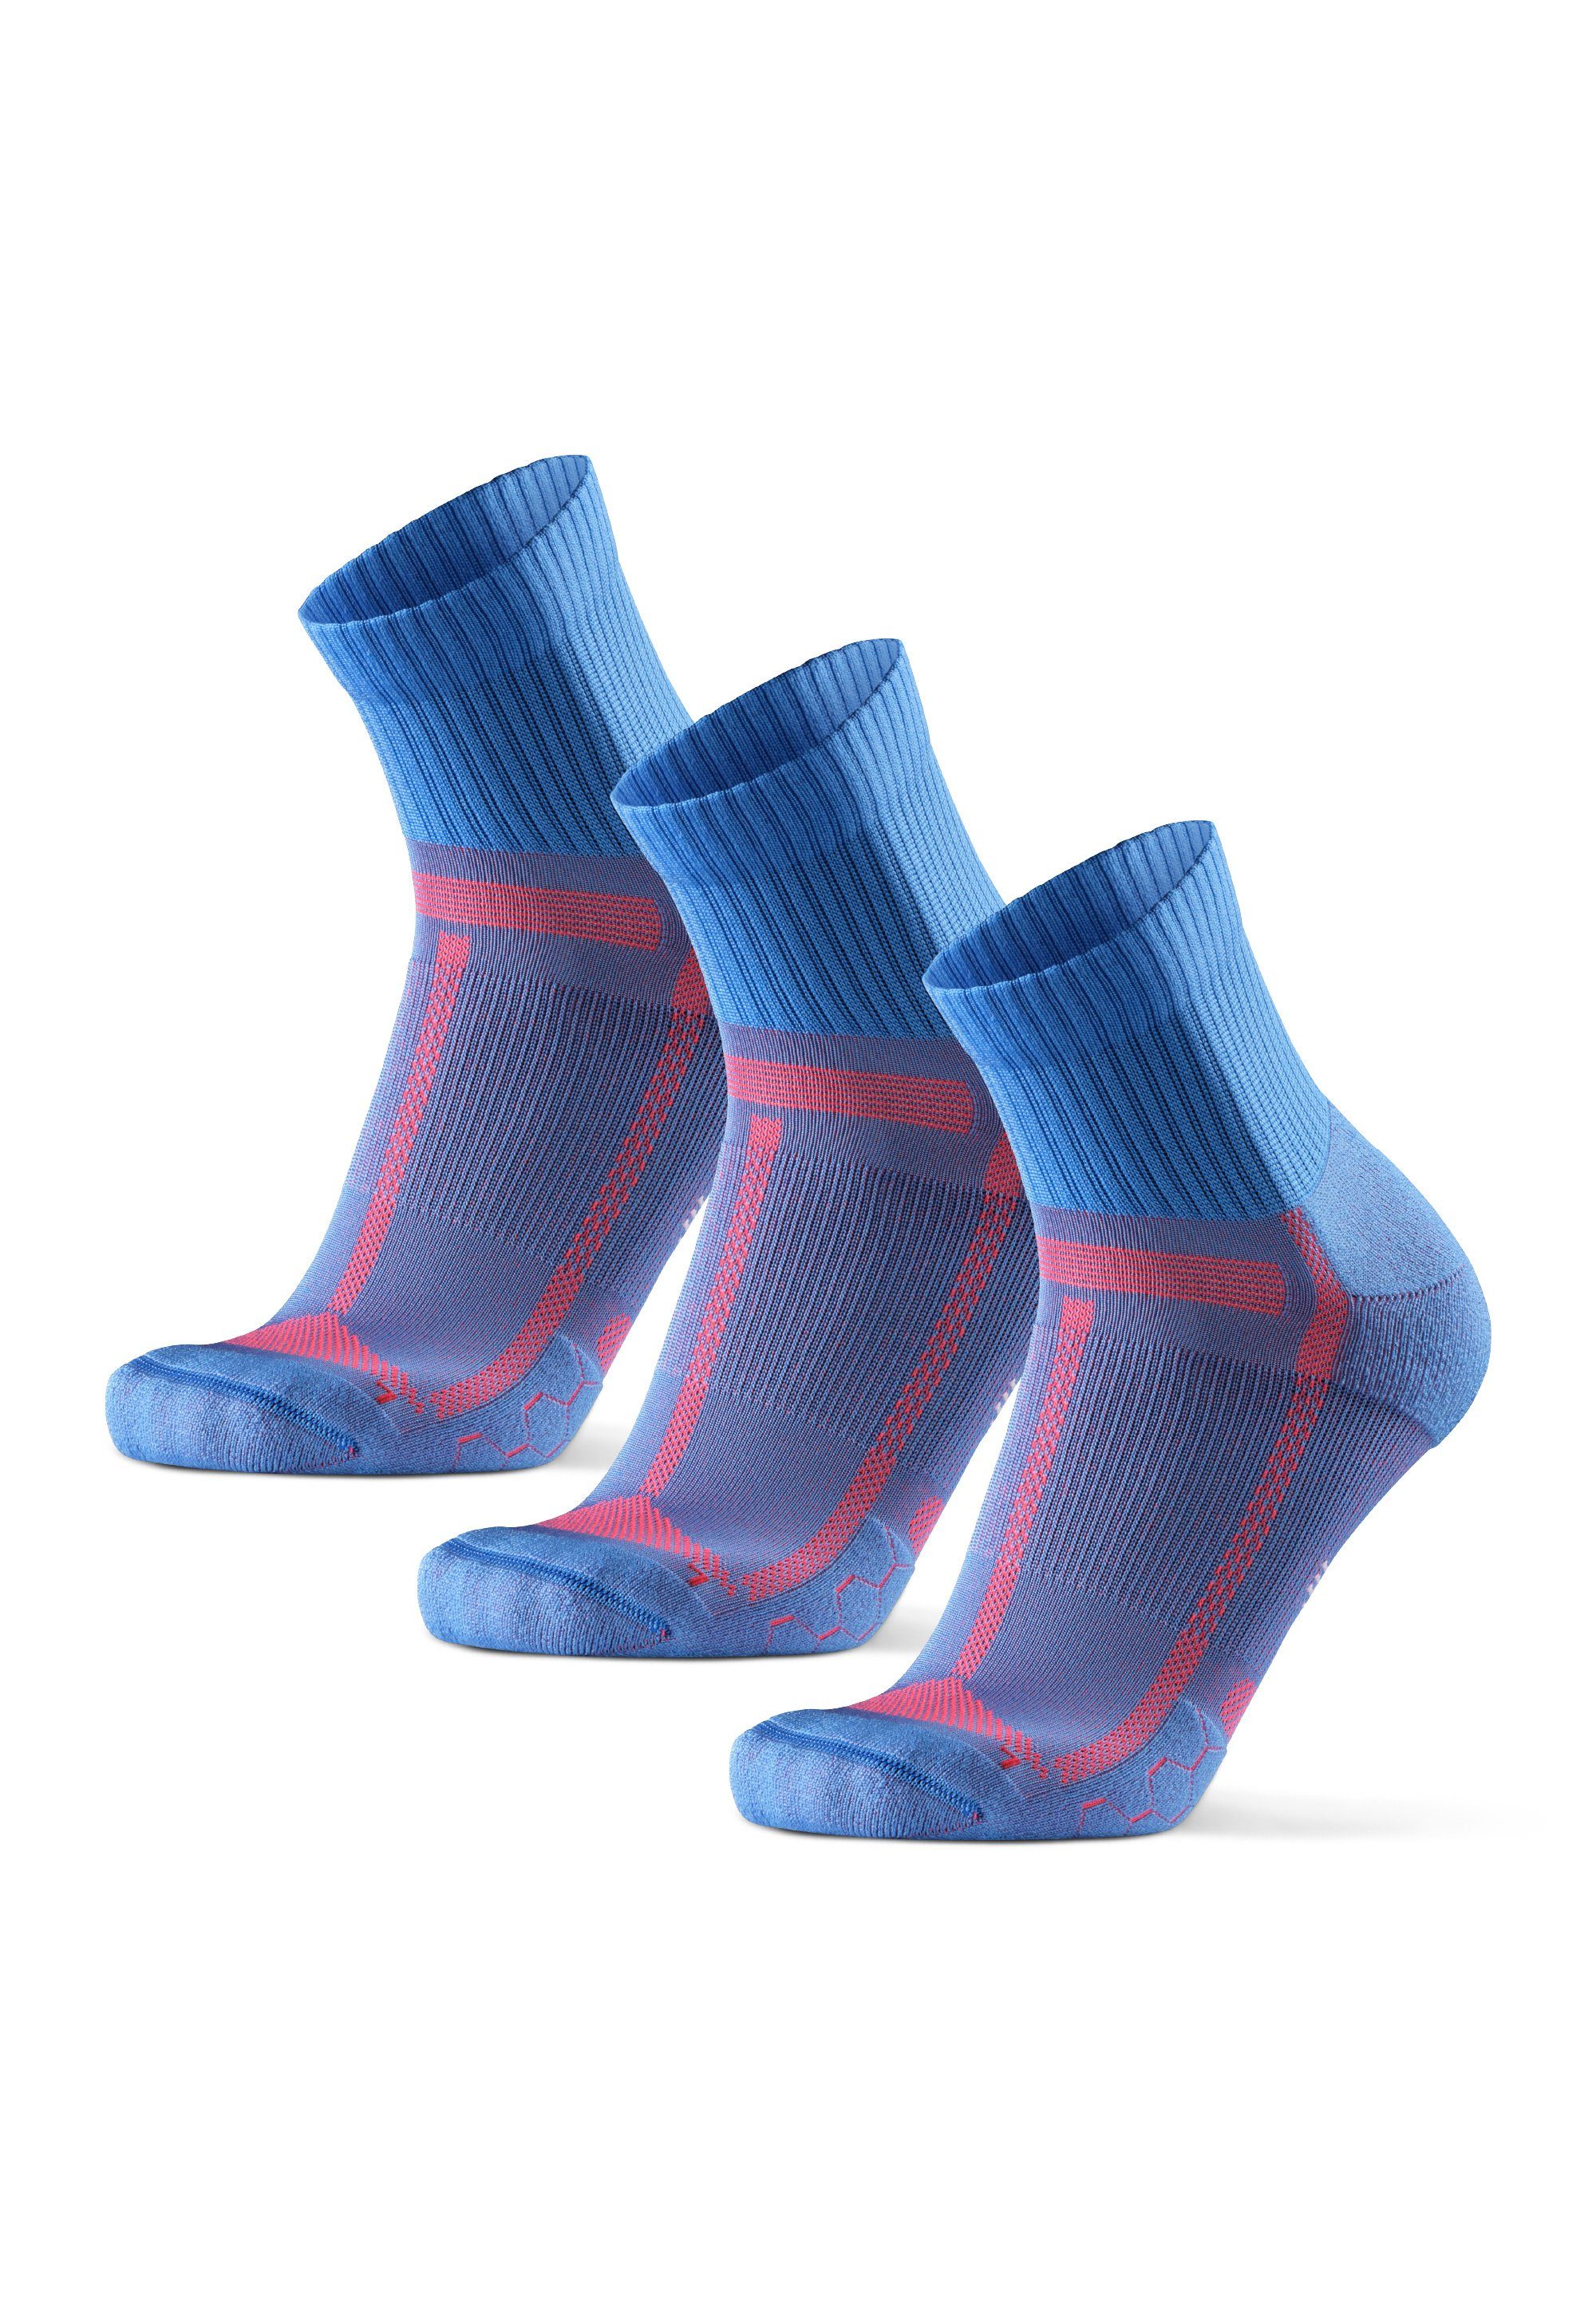 DANISH ENDURANCE Laufsocken Long Distance Running Socks (Packung, 3-Paar) Anti-Blasen, Technisch light blue/orange